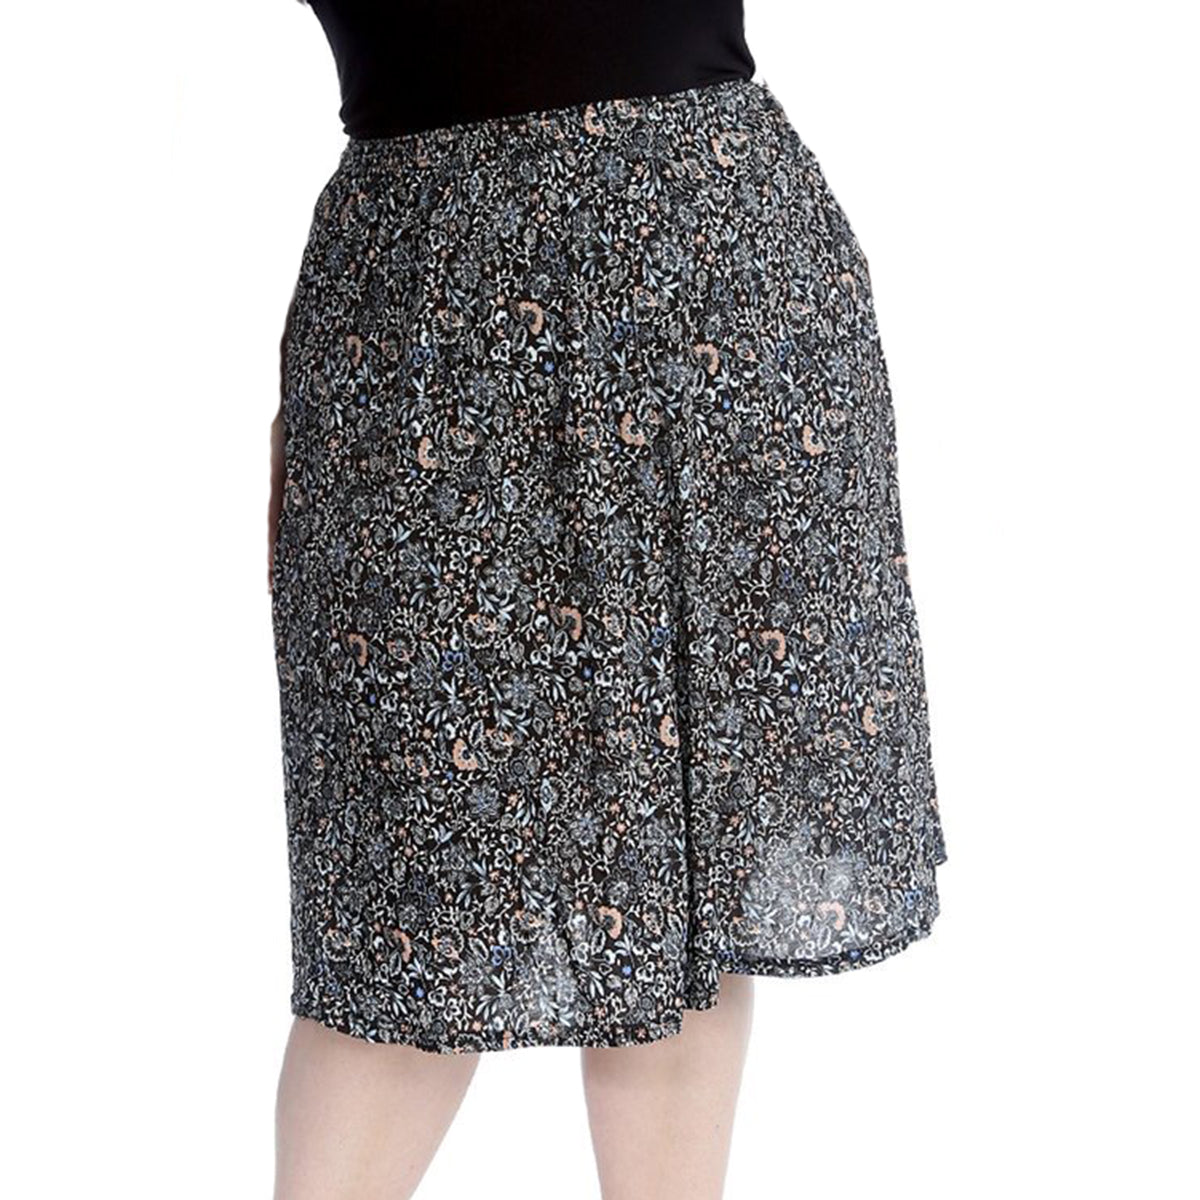 Elastic Waist patterned UPPER CALF length skirt - PLUS SIZES